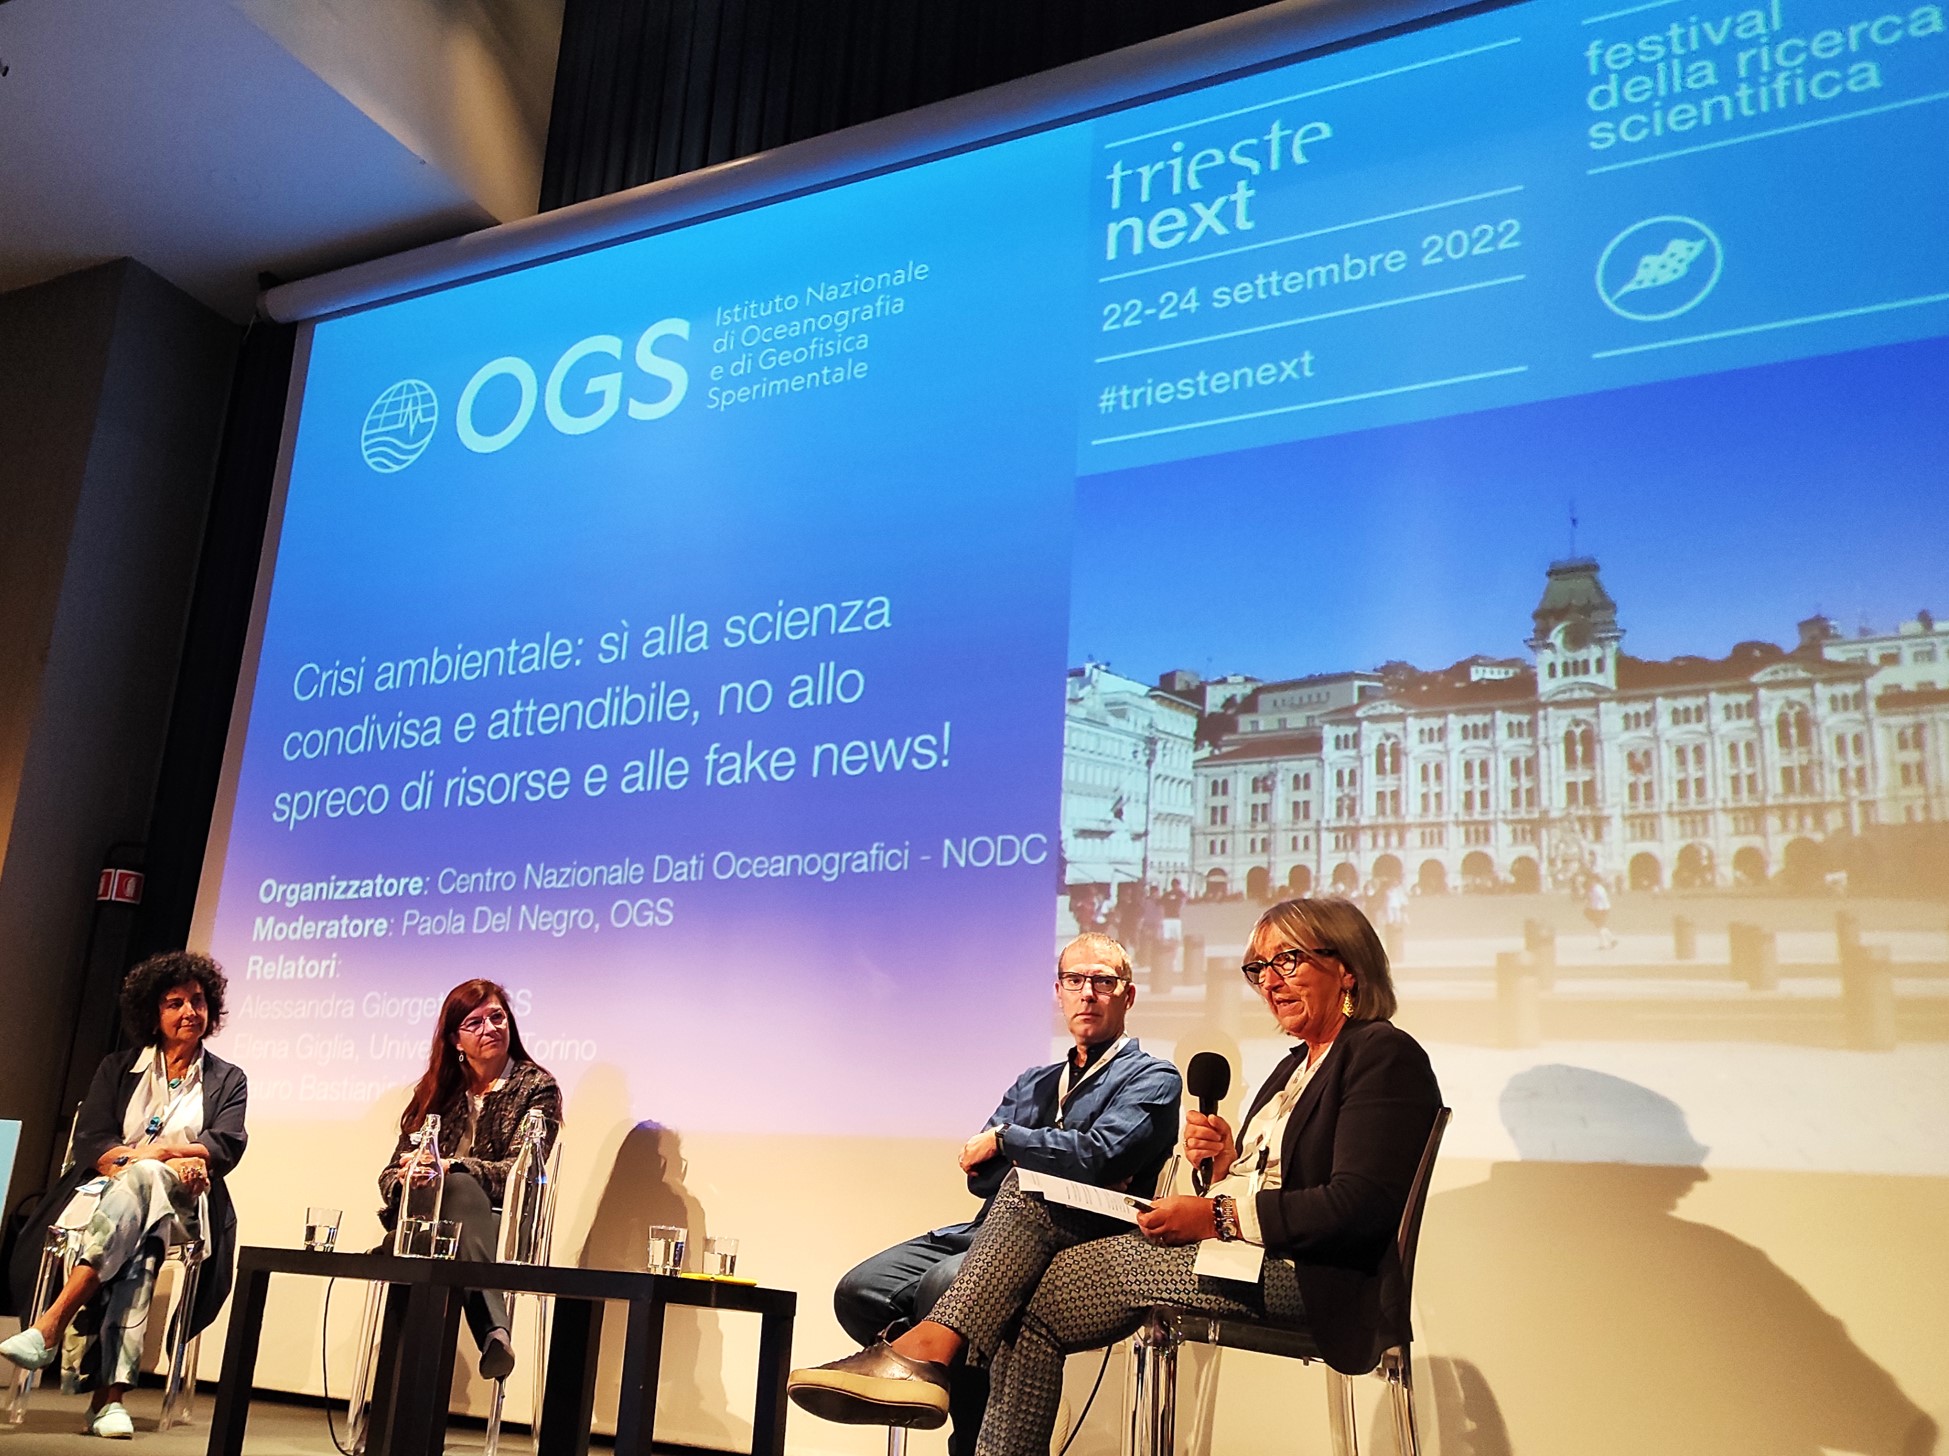 Trieste Next 2022: OGS e il valore della Scienza Aperta